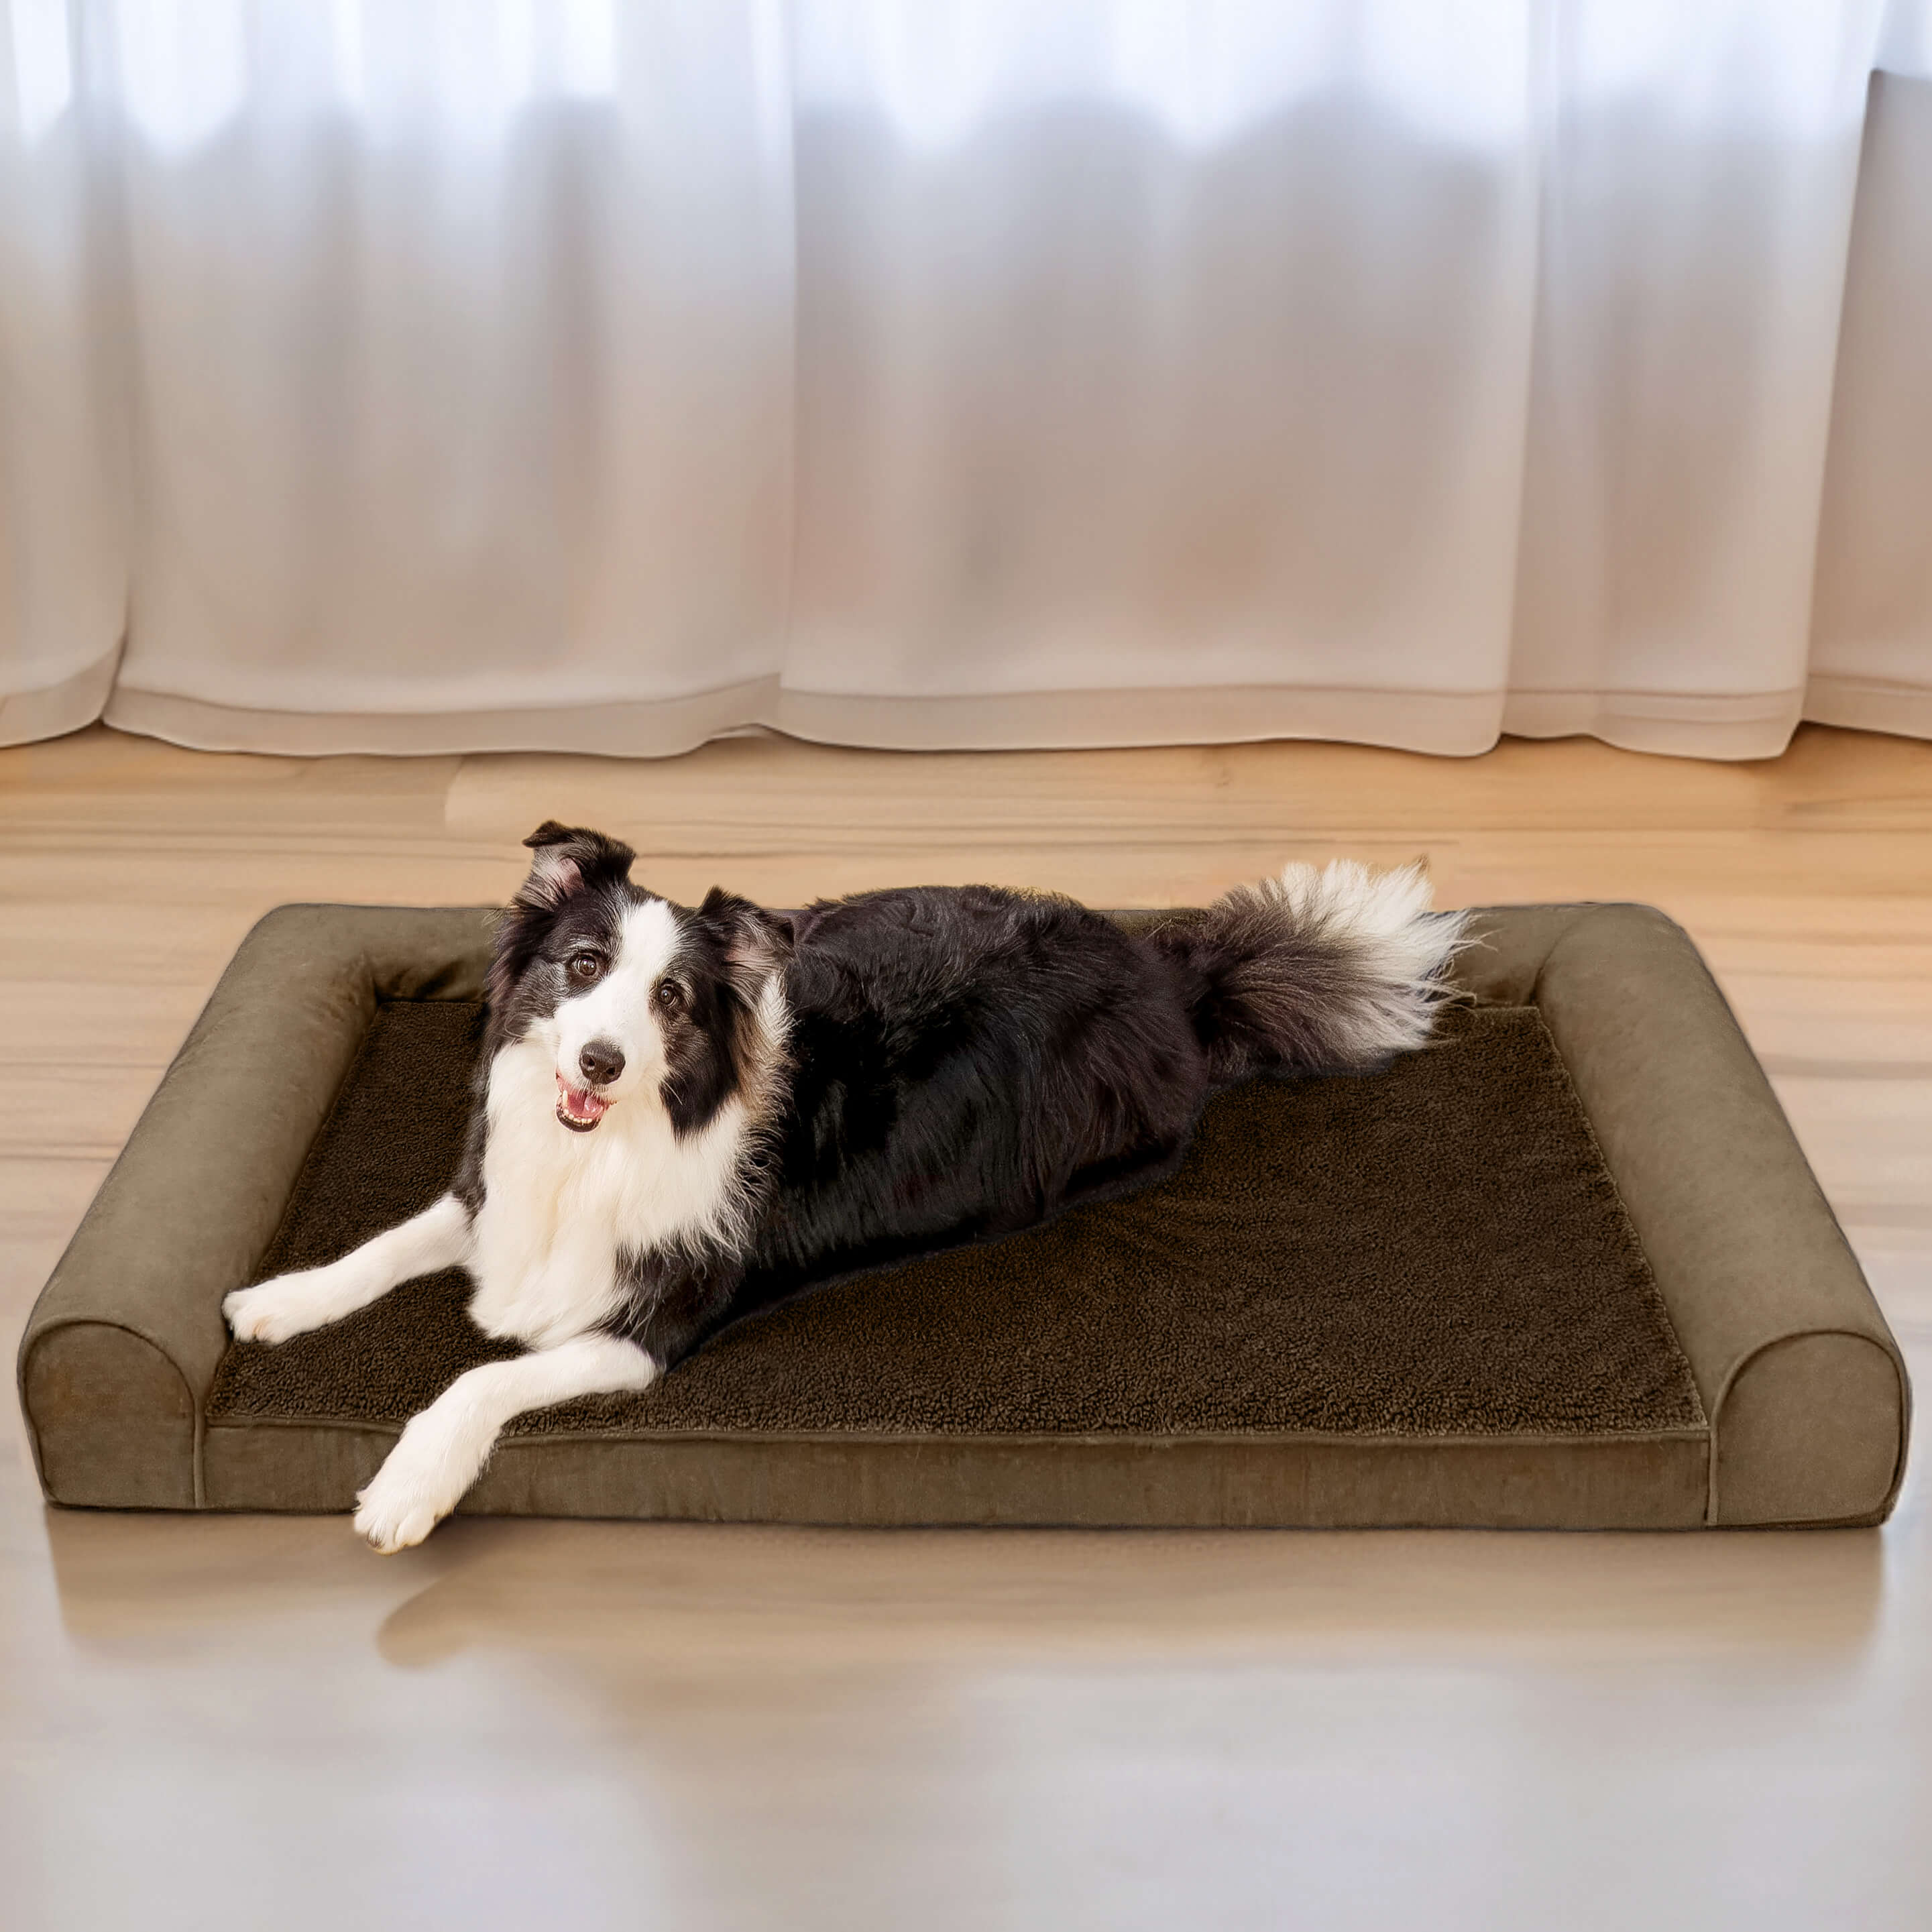 Cama ortopédica para cães com suporte total de lã sintética e camurça